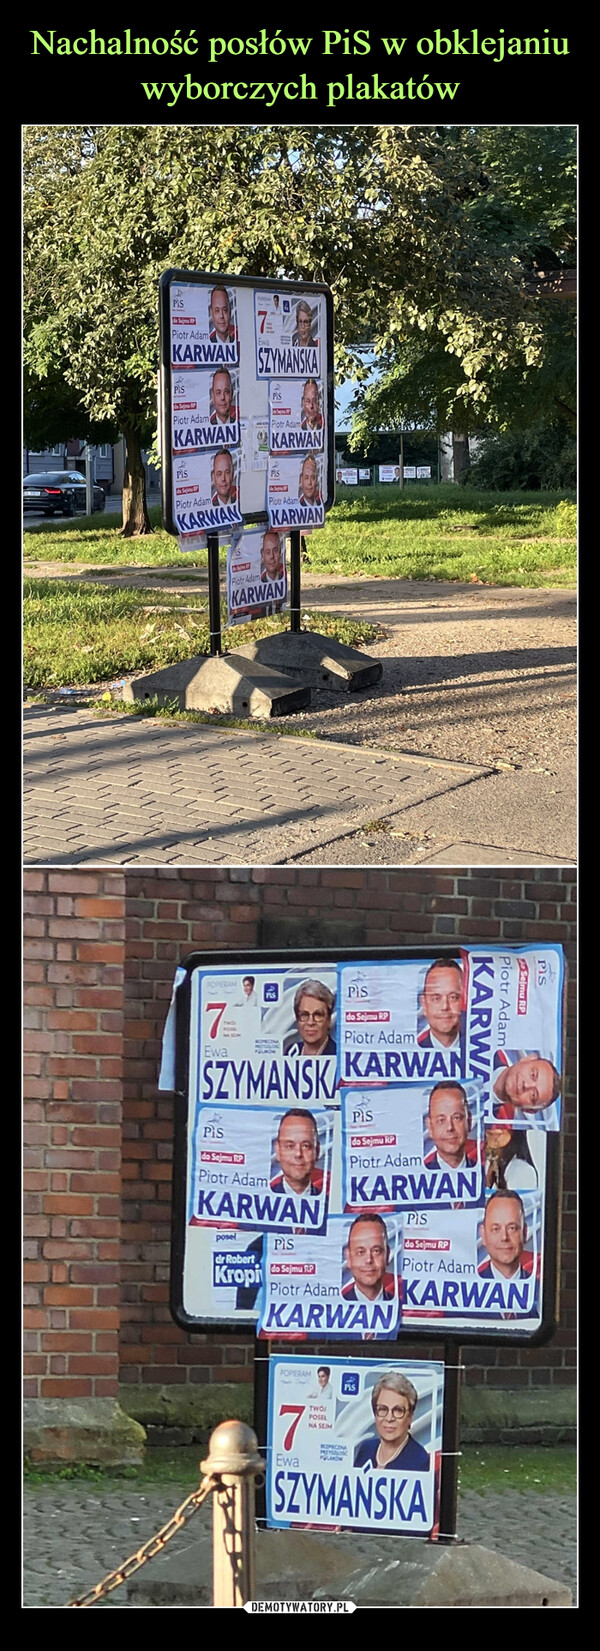 Nachalność posłów PiS w obklejaniu wyborczych plakatów